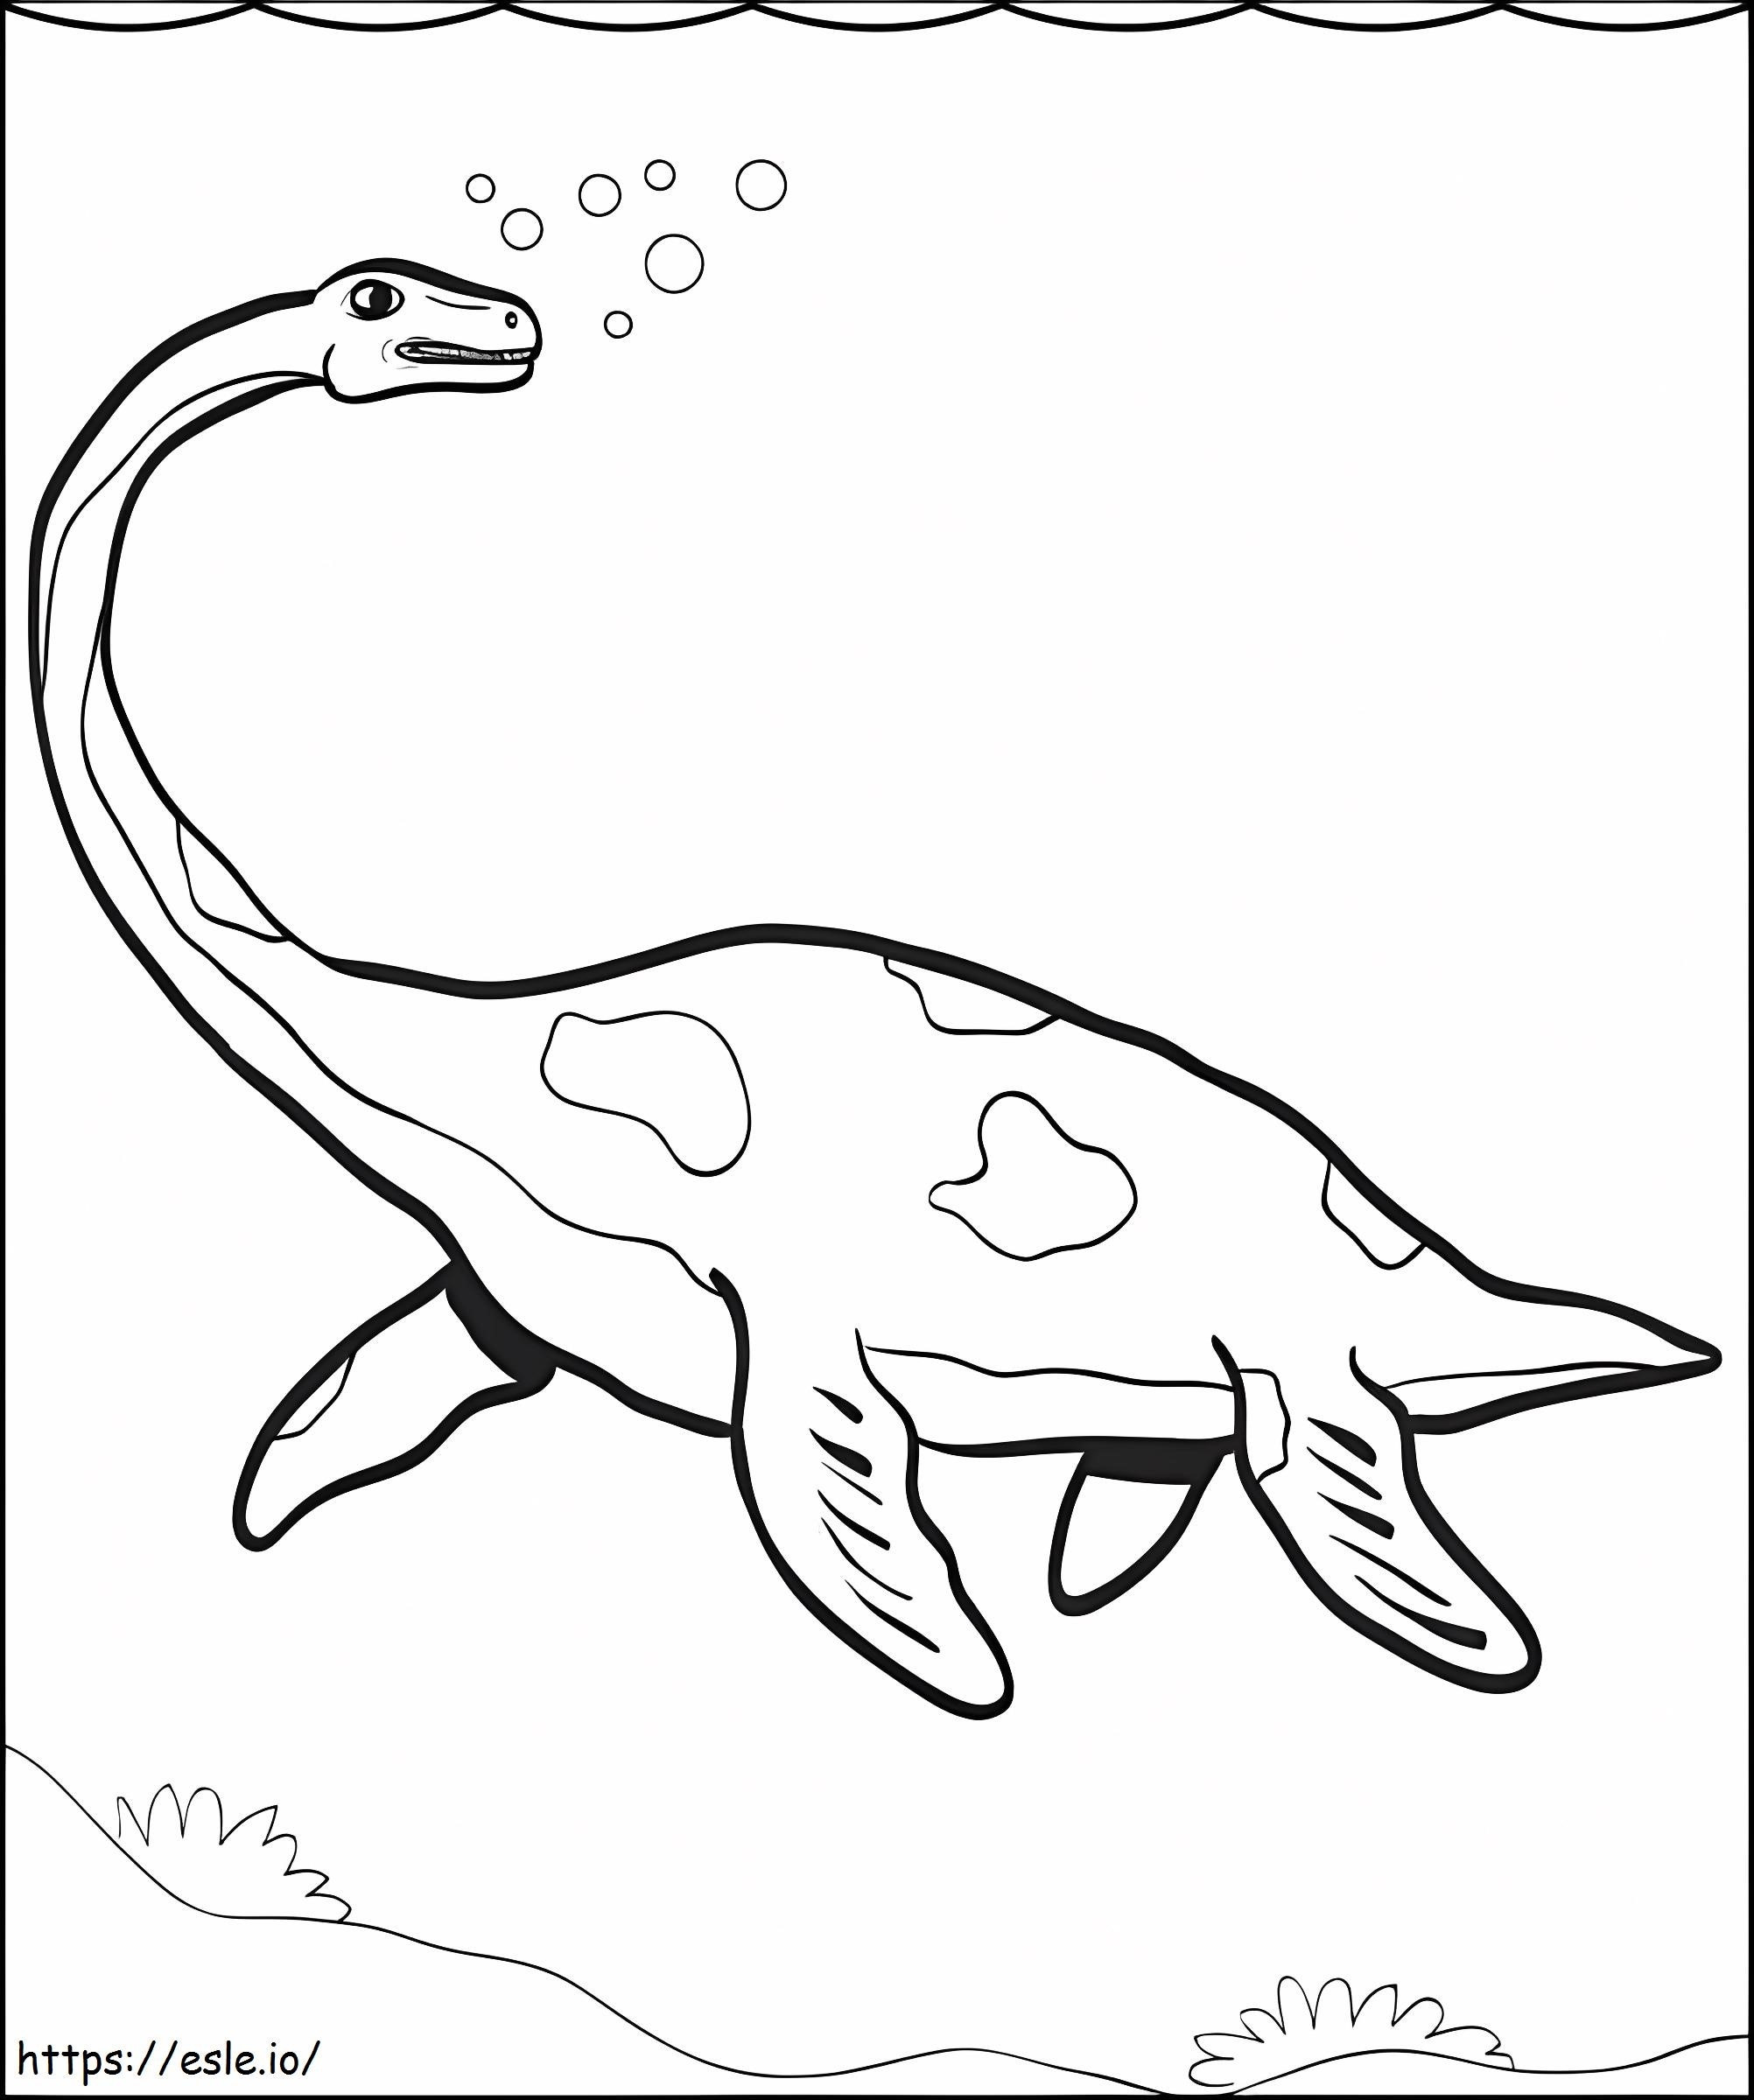 Plesiosaurus unter Wasser ausmalbilder